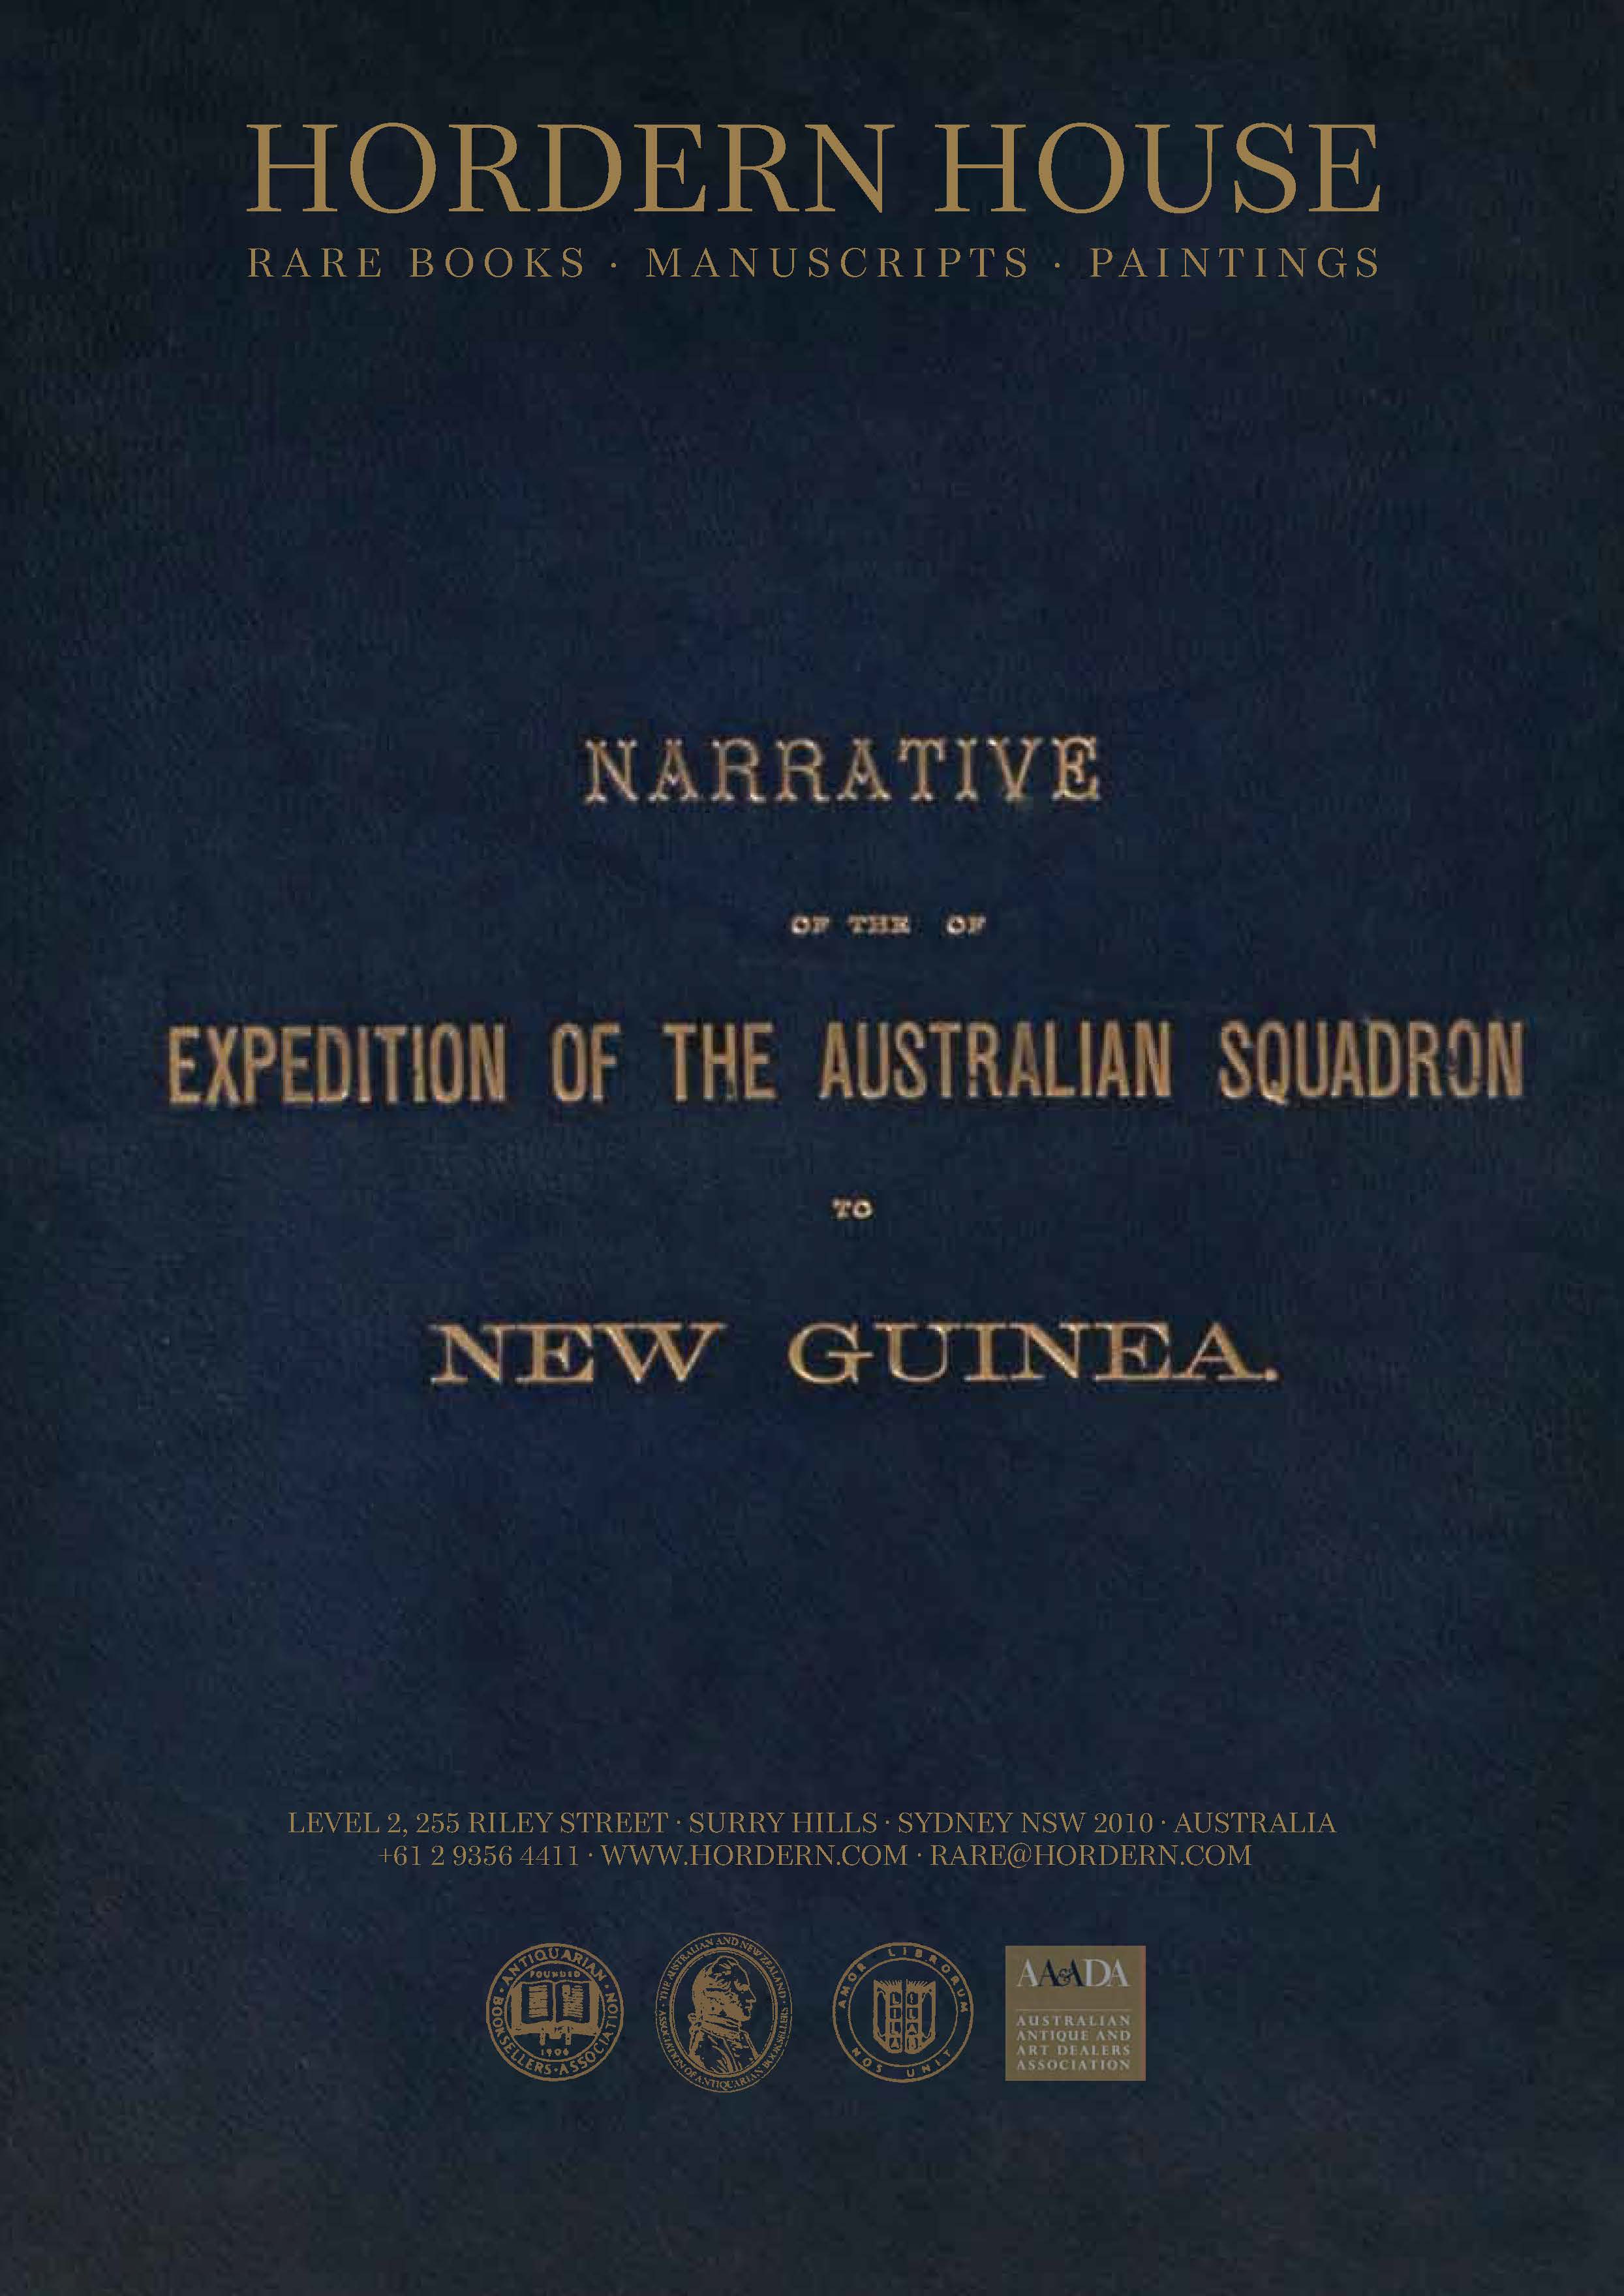 New Guinea Album